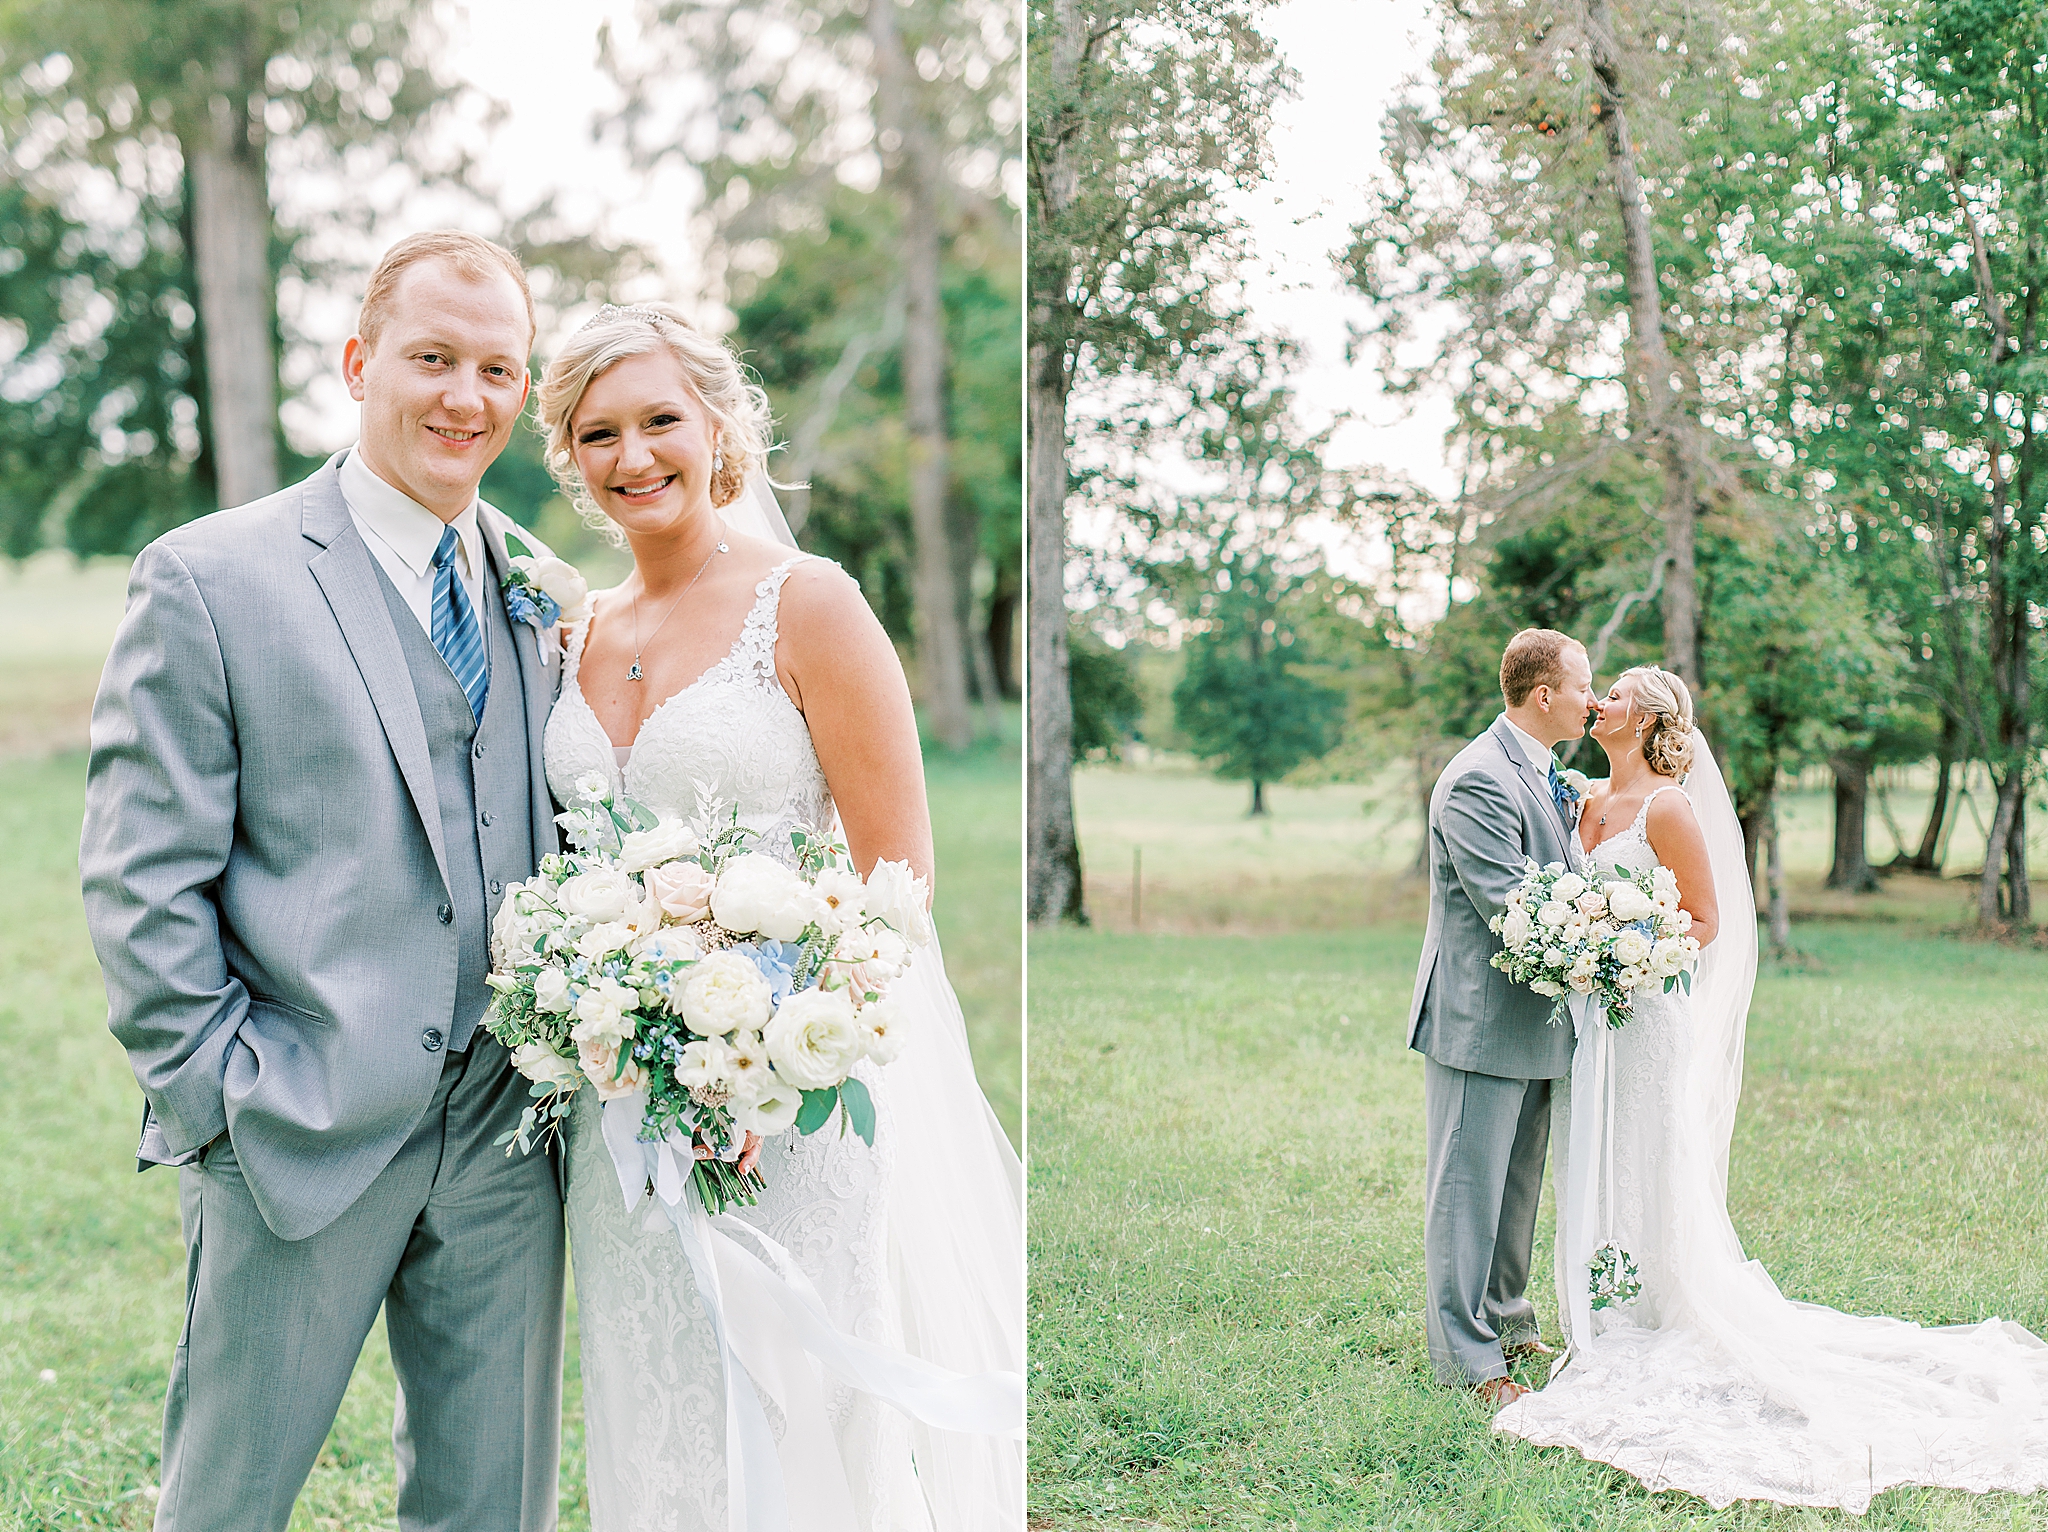 newlyweds pose on farm during wedding photos